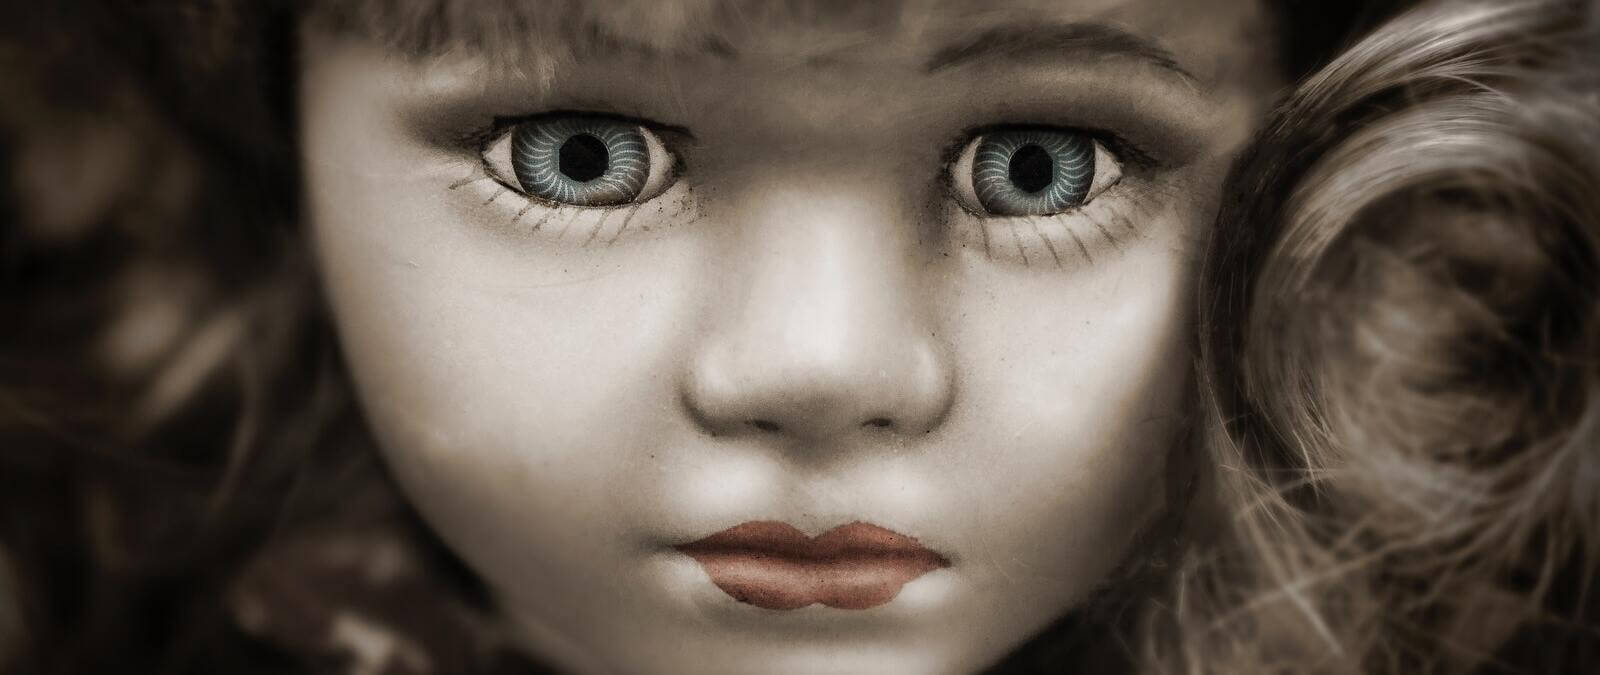 qué nos dan miedo muñecas de y otros muñecos con forma humana? · Maldita.es - Periodismo para que no te la cuelen